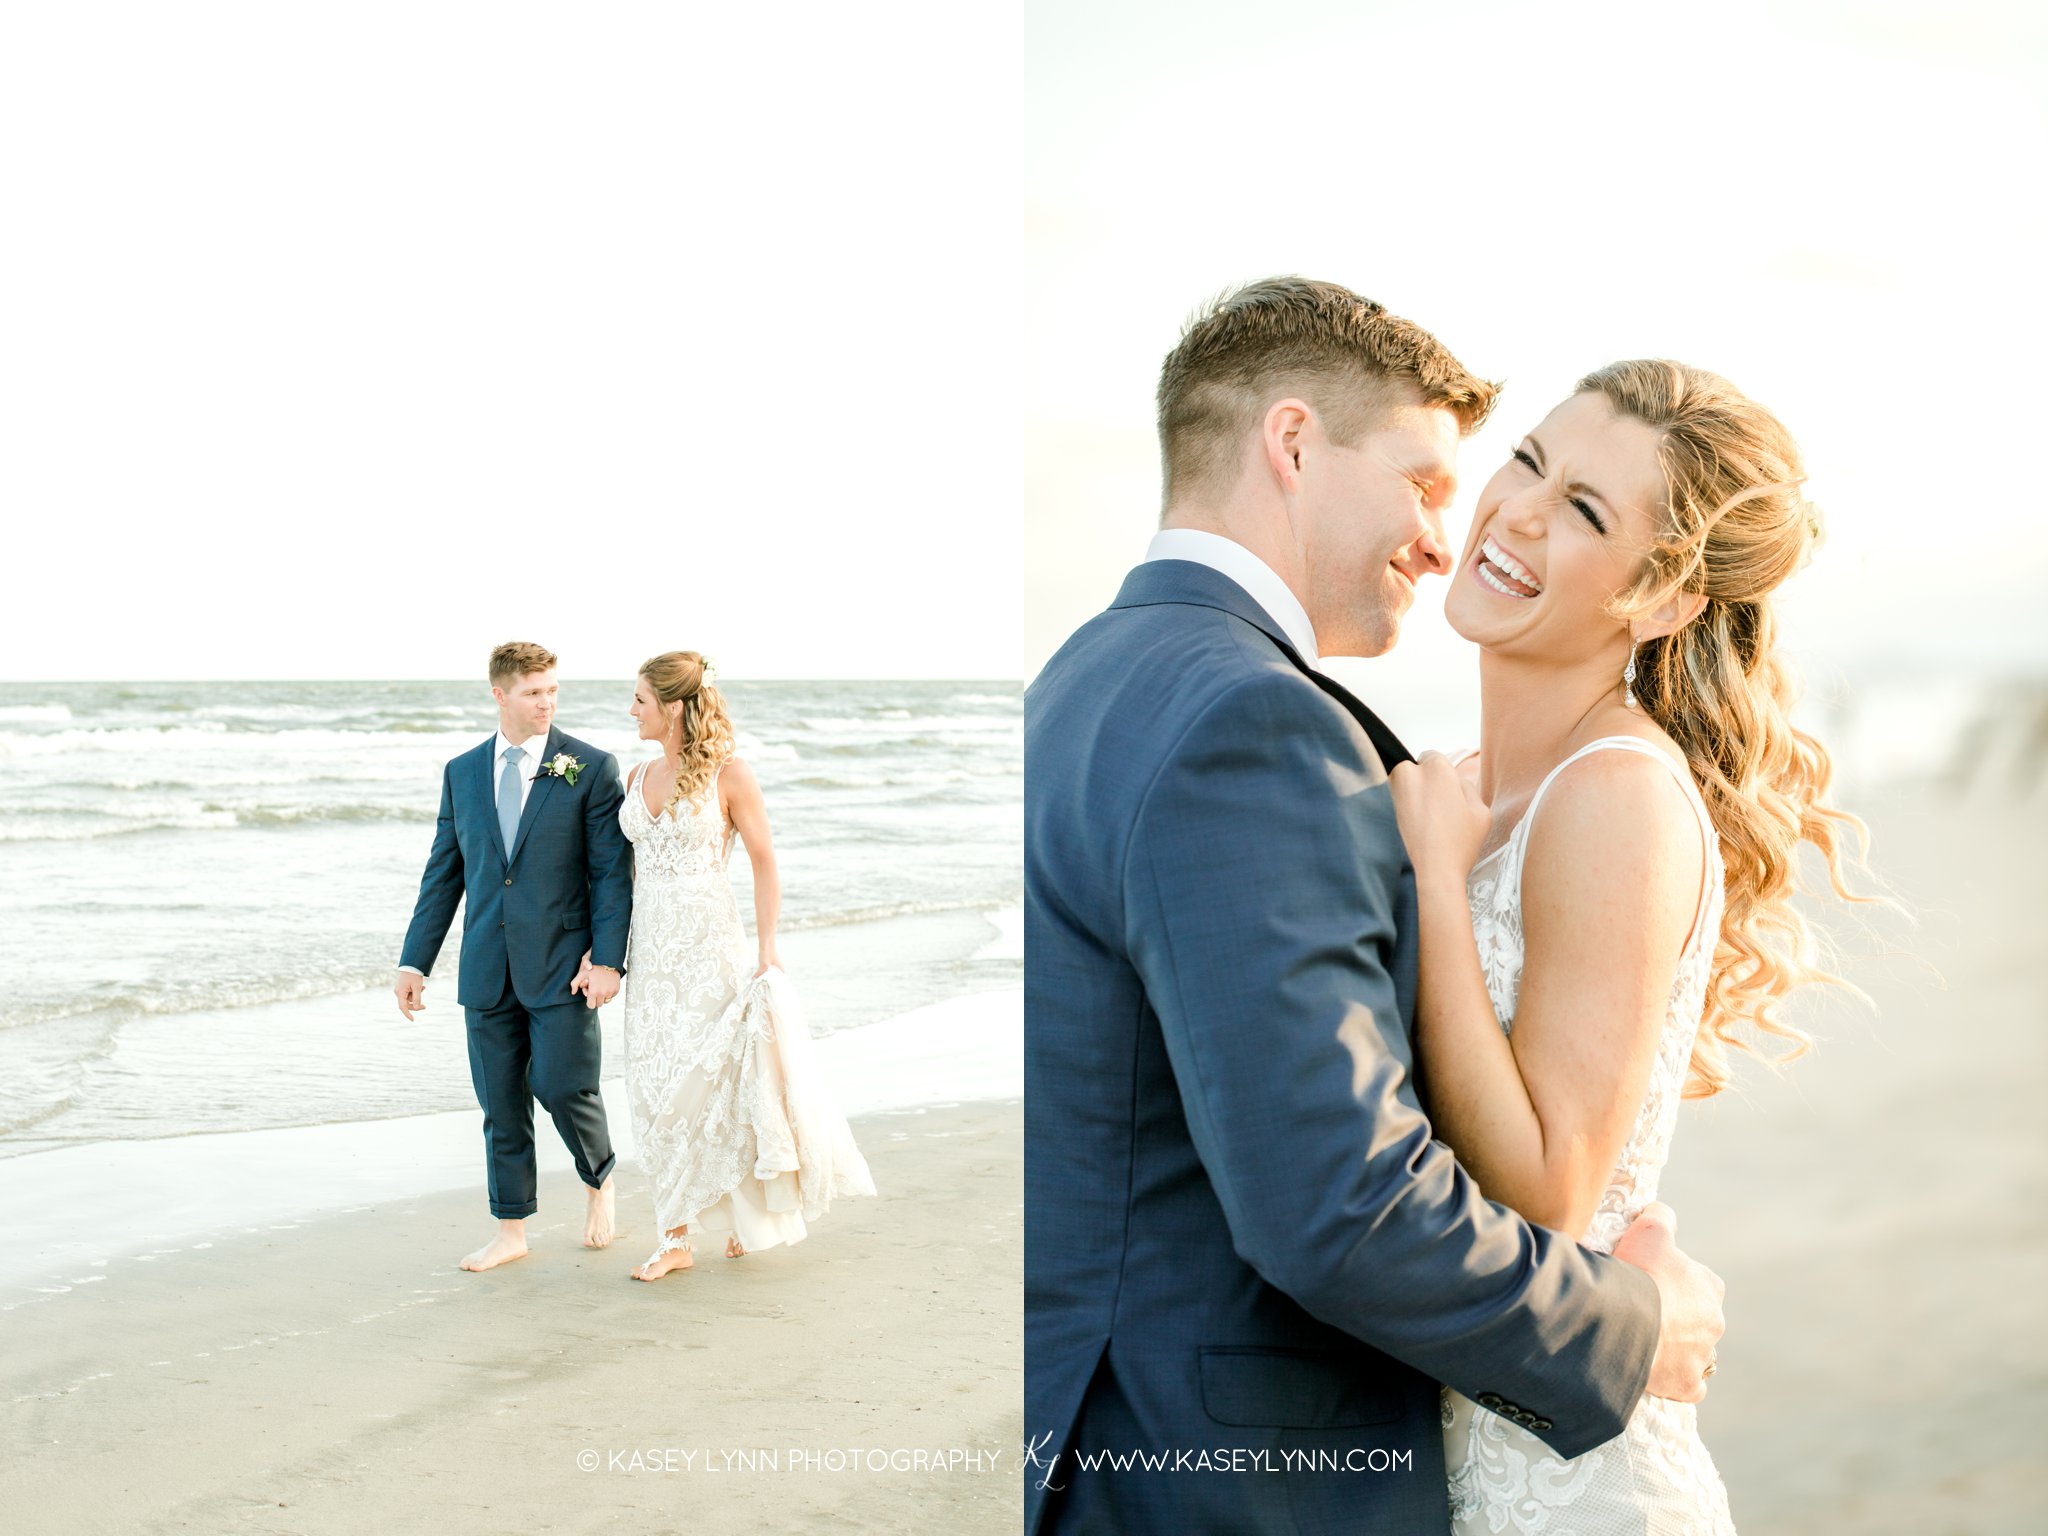 Beach Wedding Photographer / Kasey Lynn Photography